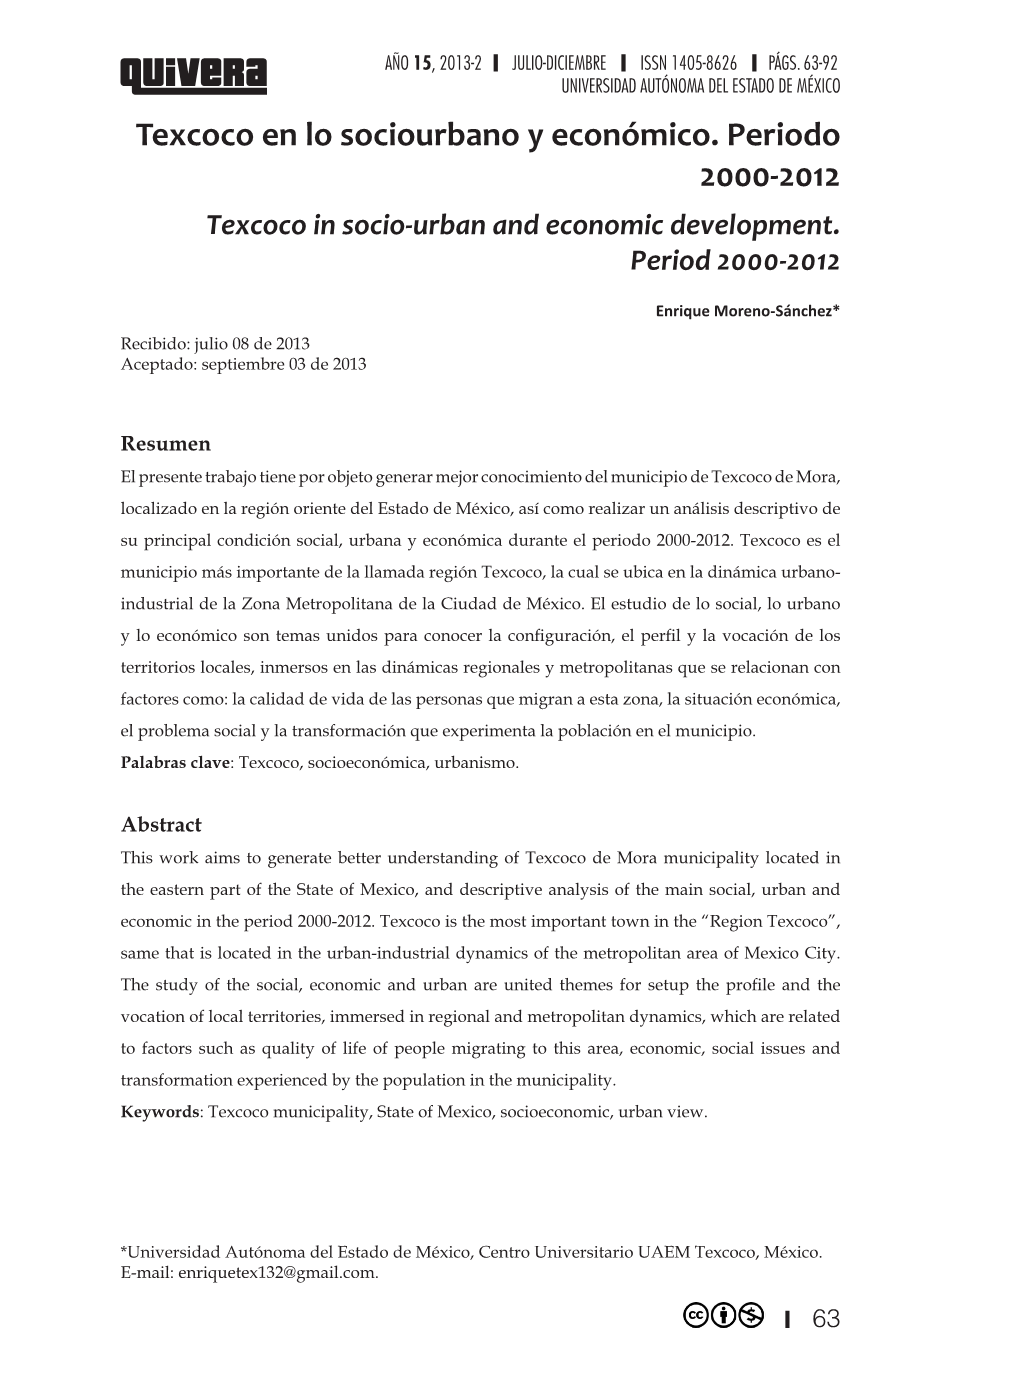 Texcoco En Lo Sociourbano Y Económico. Periodo 2000-2012 Texcoco in Socio-Urban and Economic Development